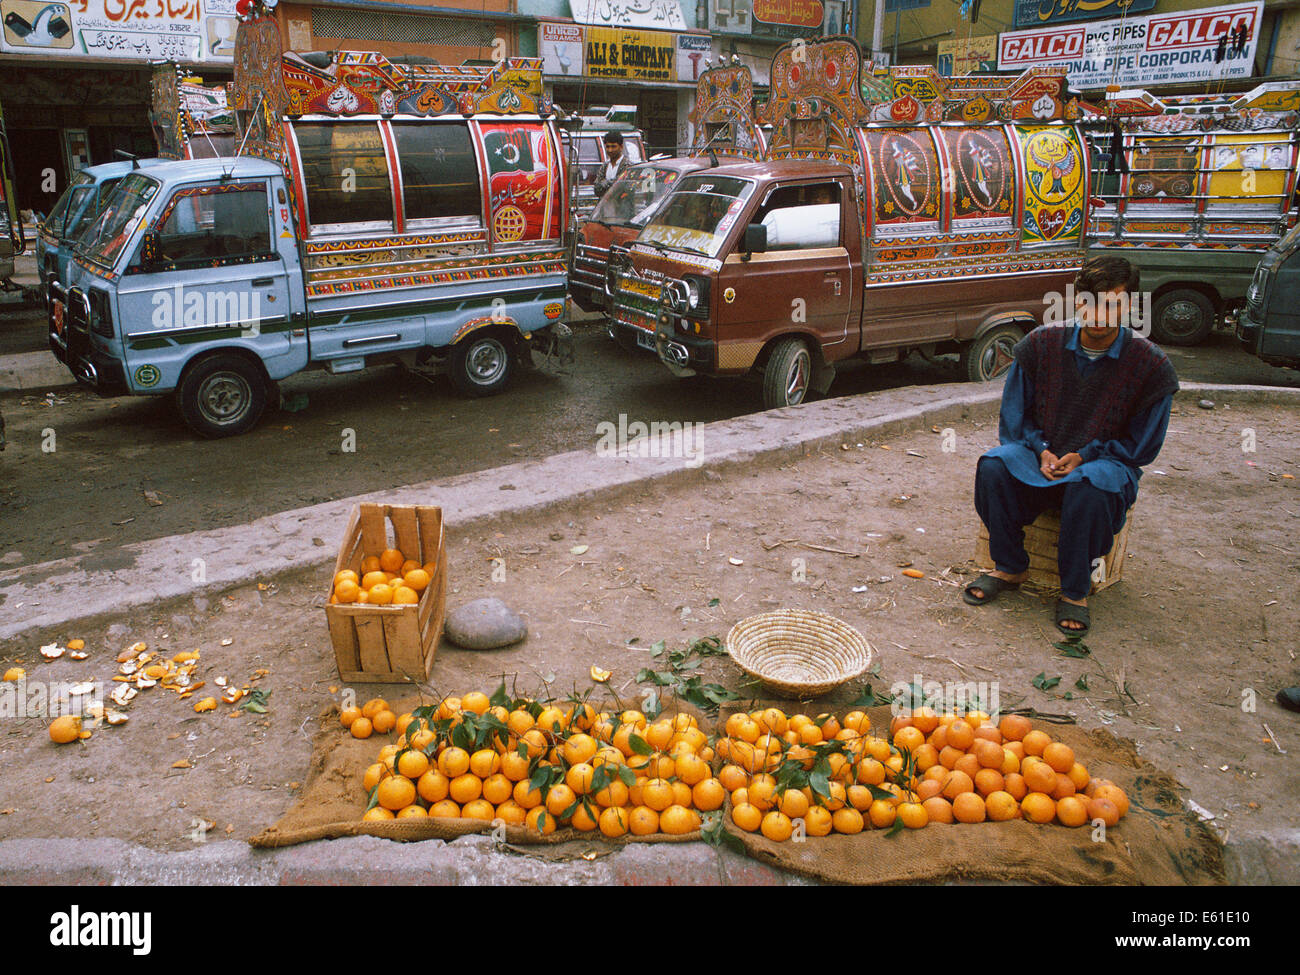 Man selling oranges. Derrière lui, les mini-fourgonnettes sont en attente pour les passagers ( Pakistan) Banque D'Images